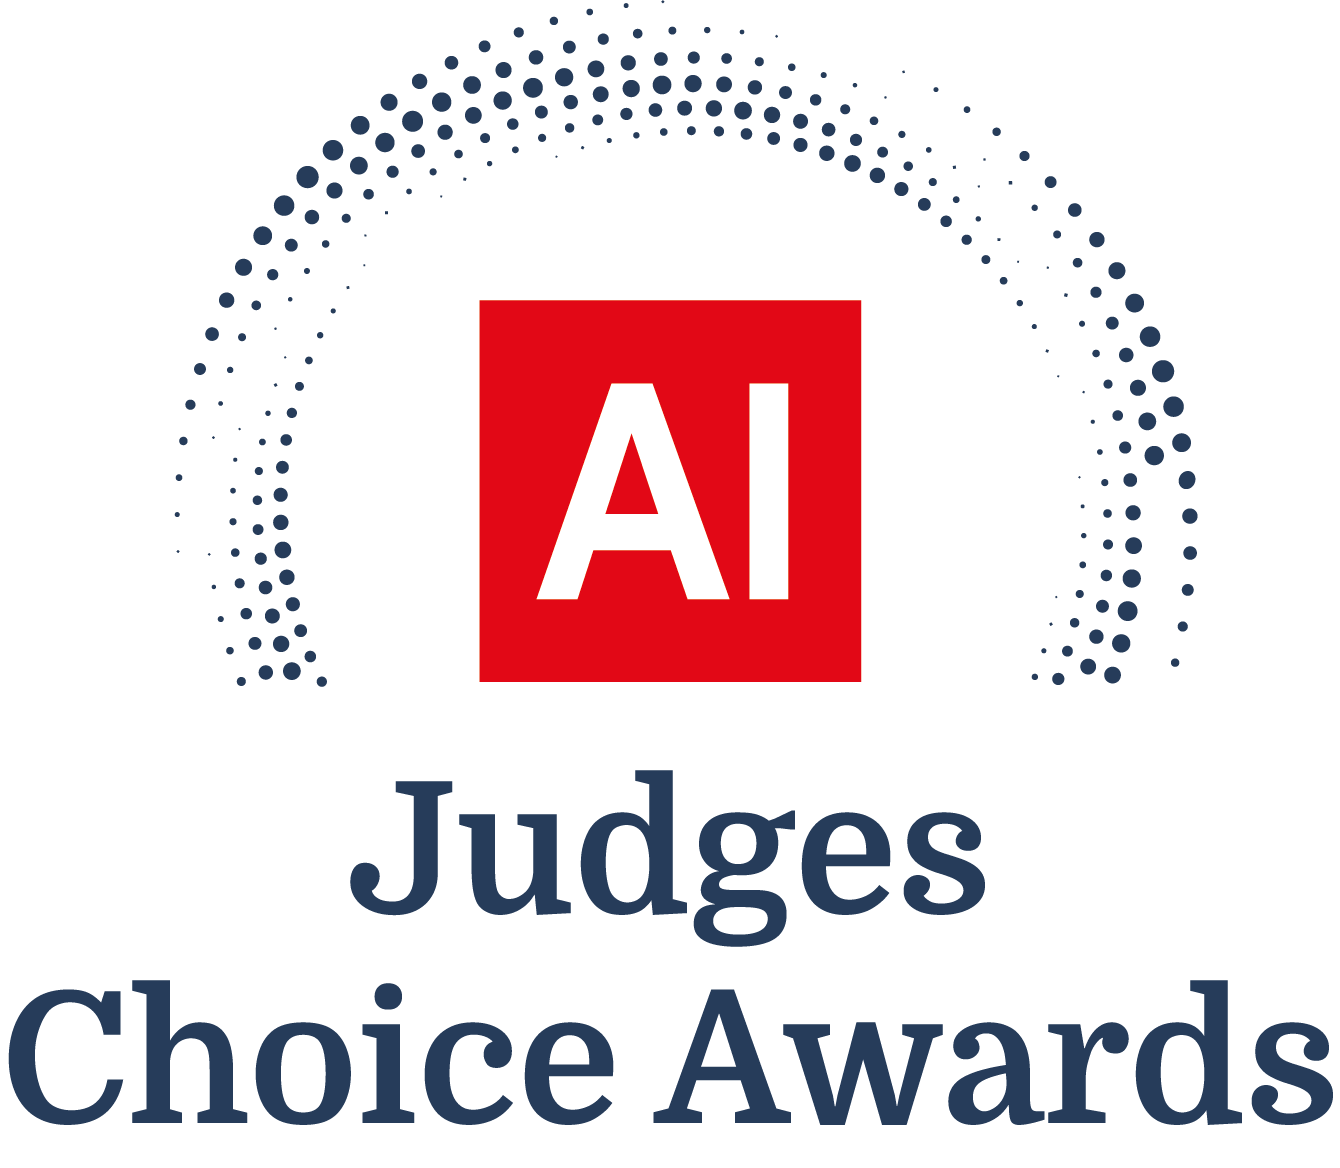 Current Award Logo - Judges Choice Awards